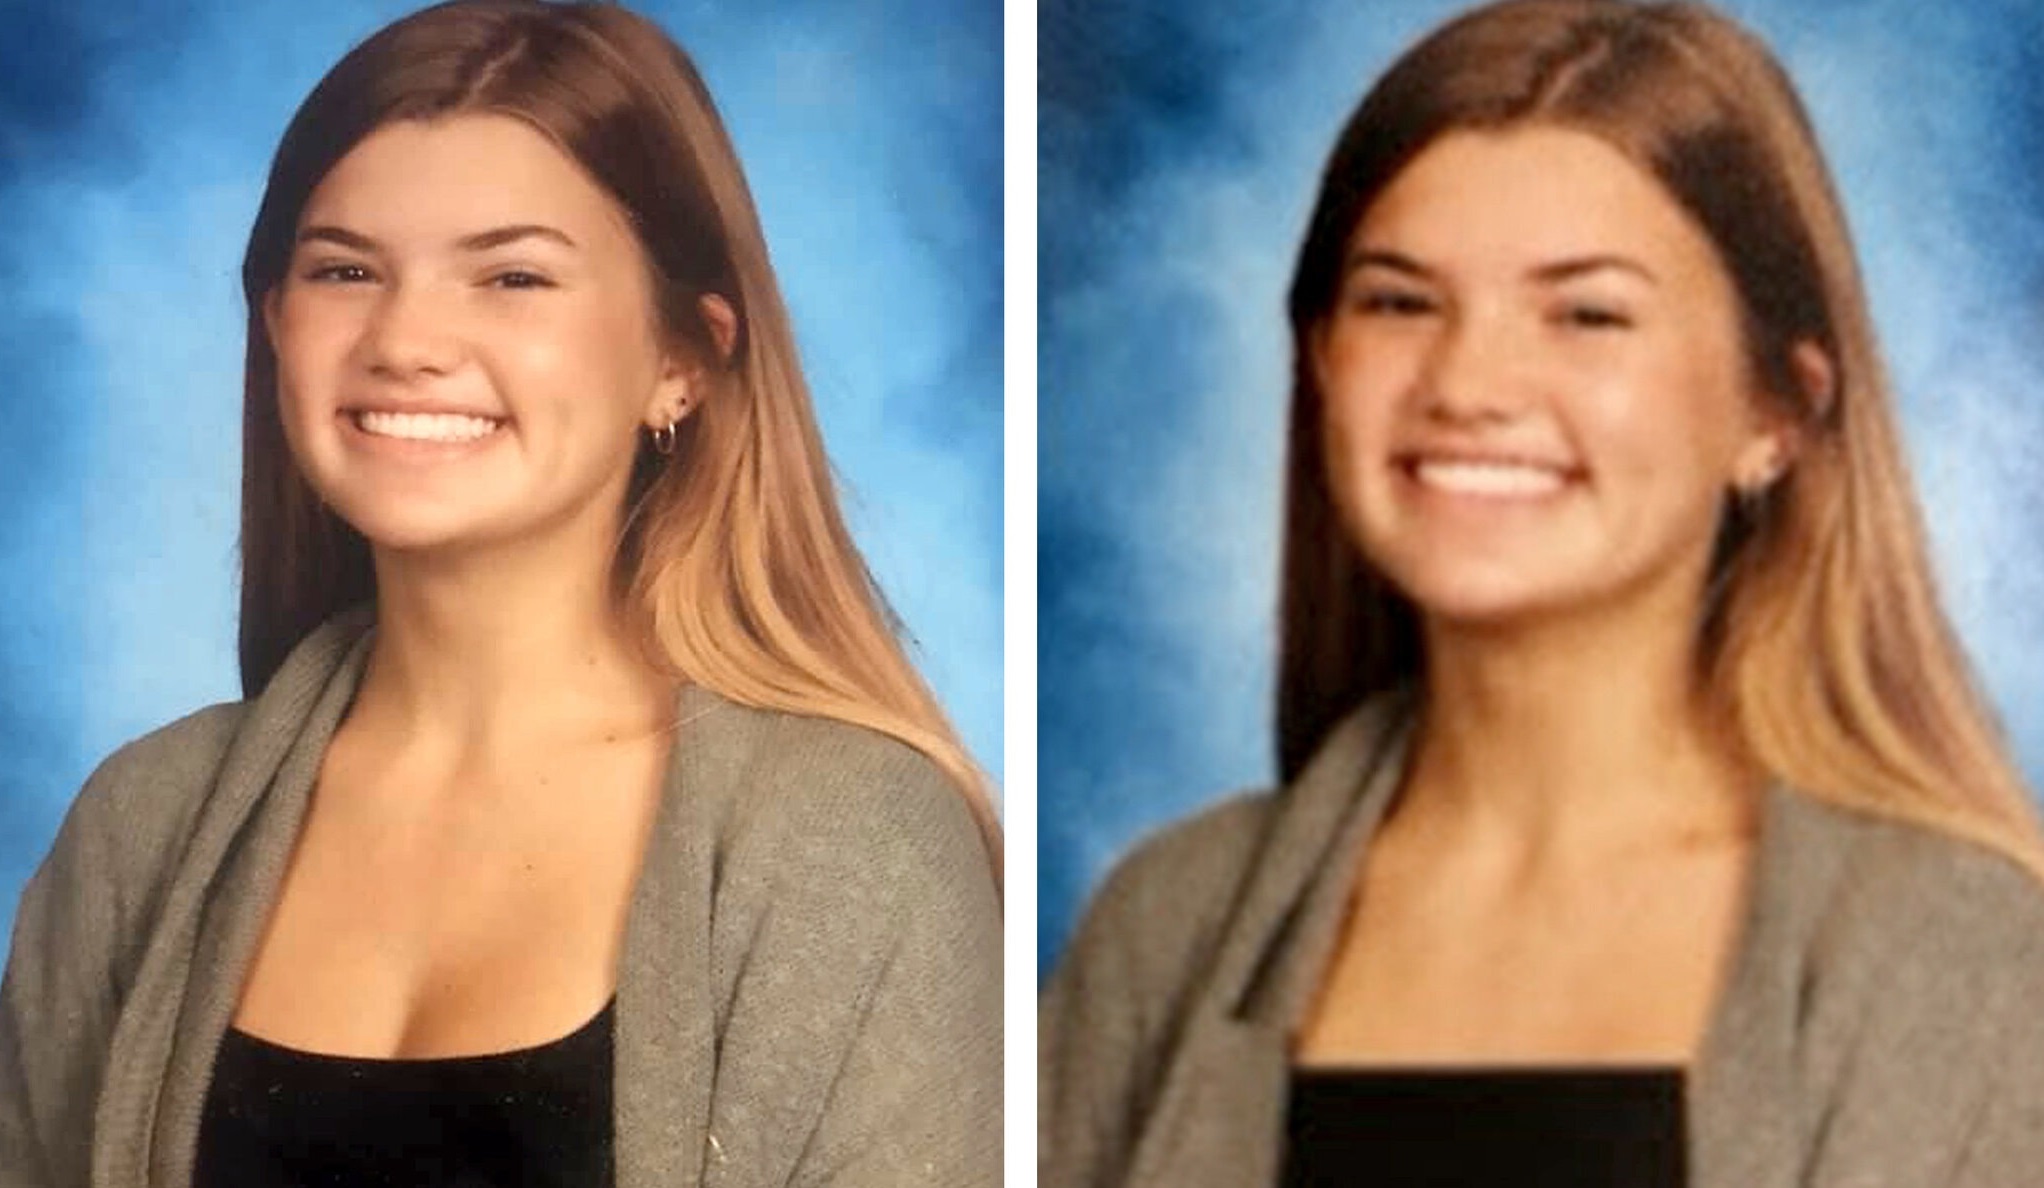 Un liceu din Florida editează fotografiile din albumul de absolvire astfel încât decolteurile elevelor să fie ascunse